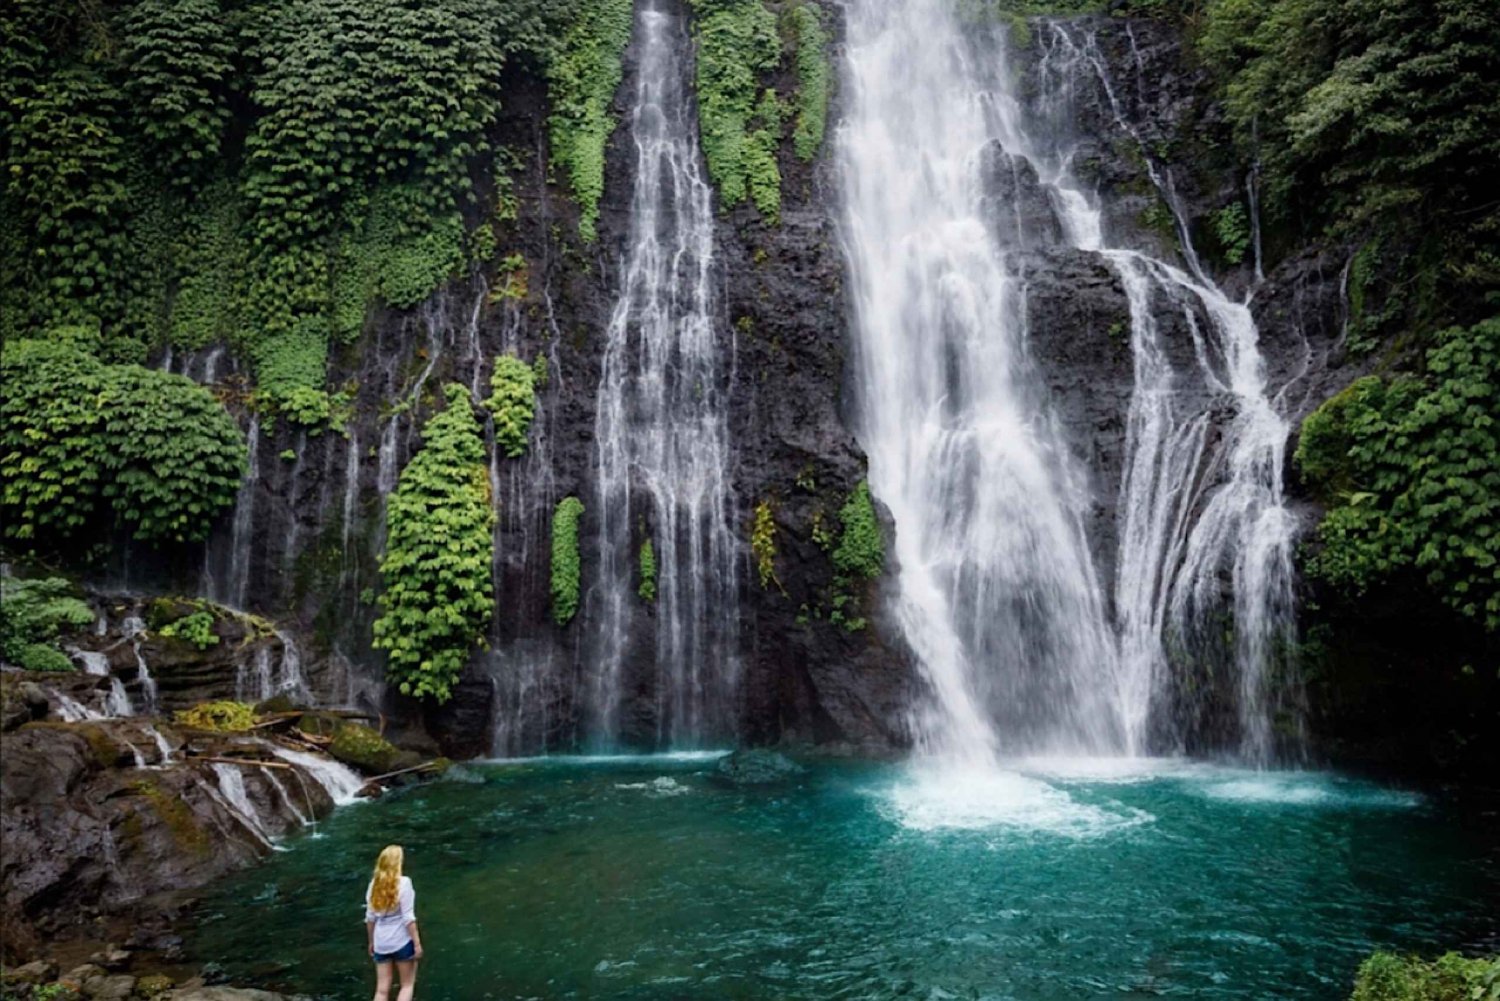 Bali/Munduk: Explore três cachoeiras diferentes de joias escondidas